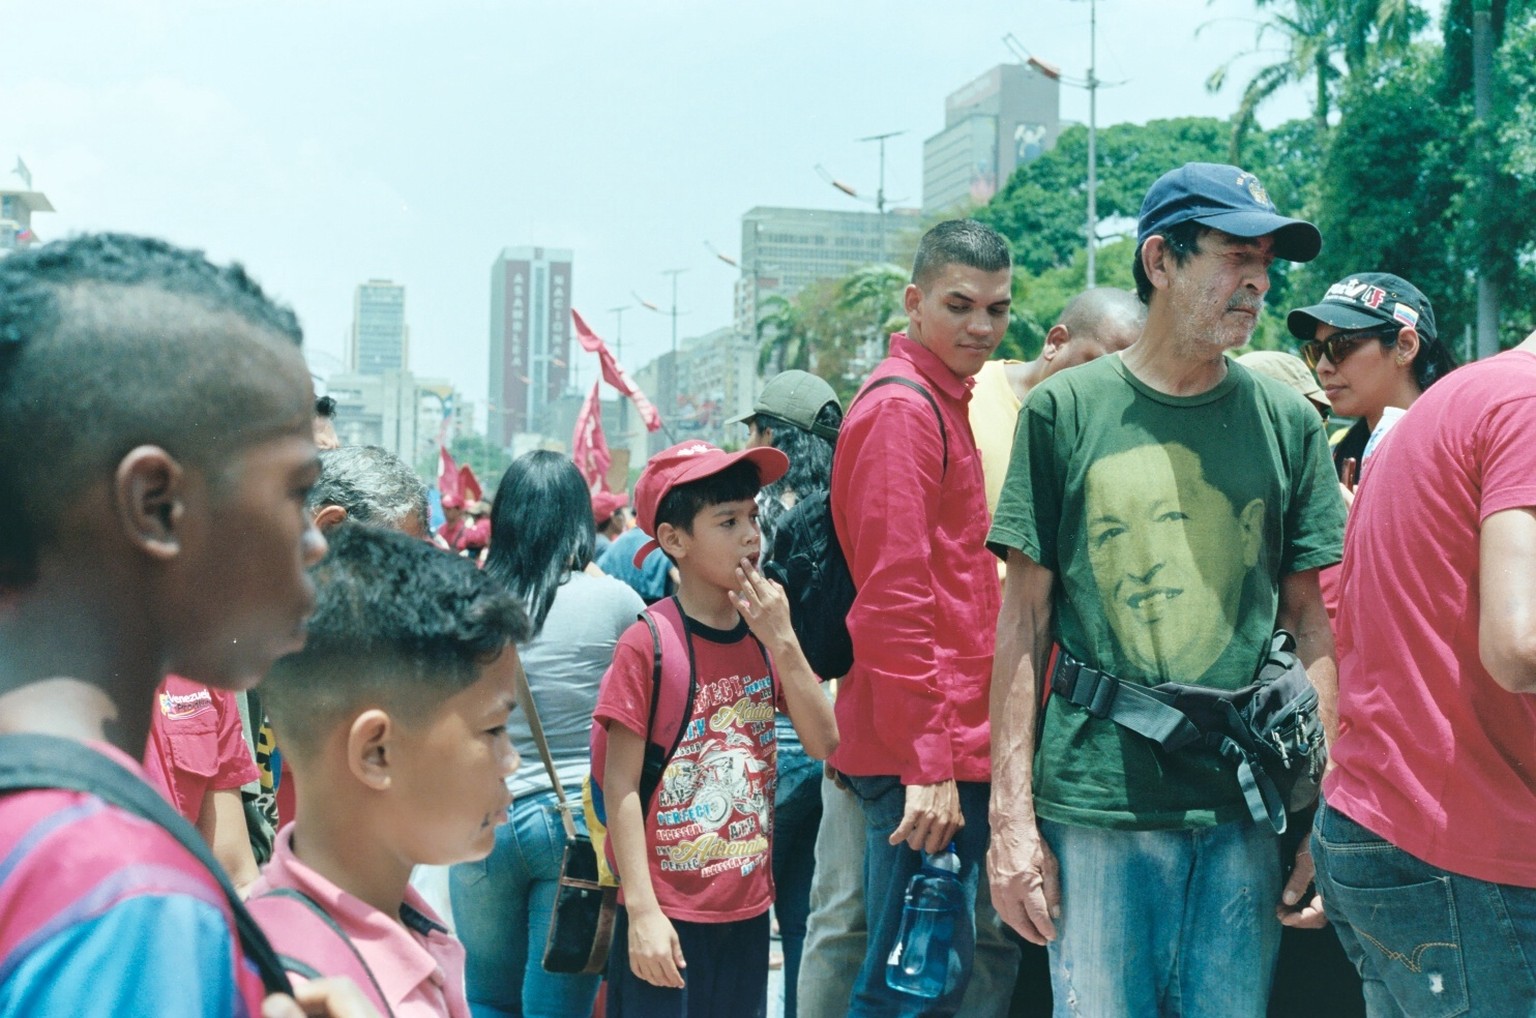 Trotz der maroden Wirtschaft und dem autoritären Führungsstil findet Präsident Maduro auch viele Unterstützer.&nbsp;&nbsp;